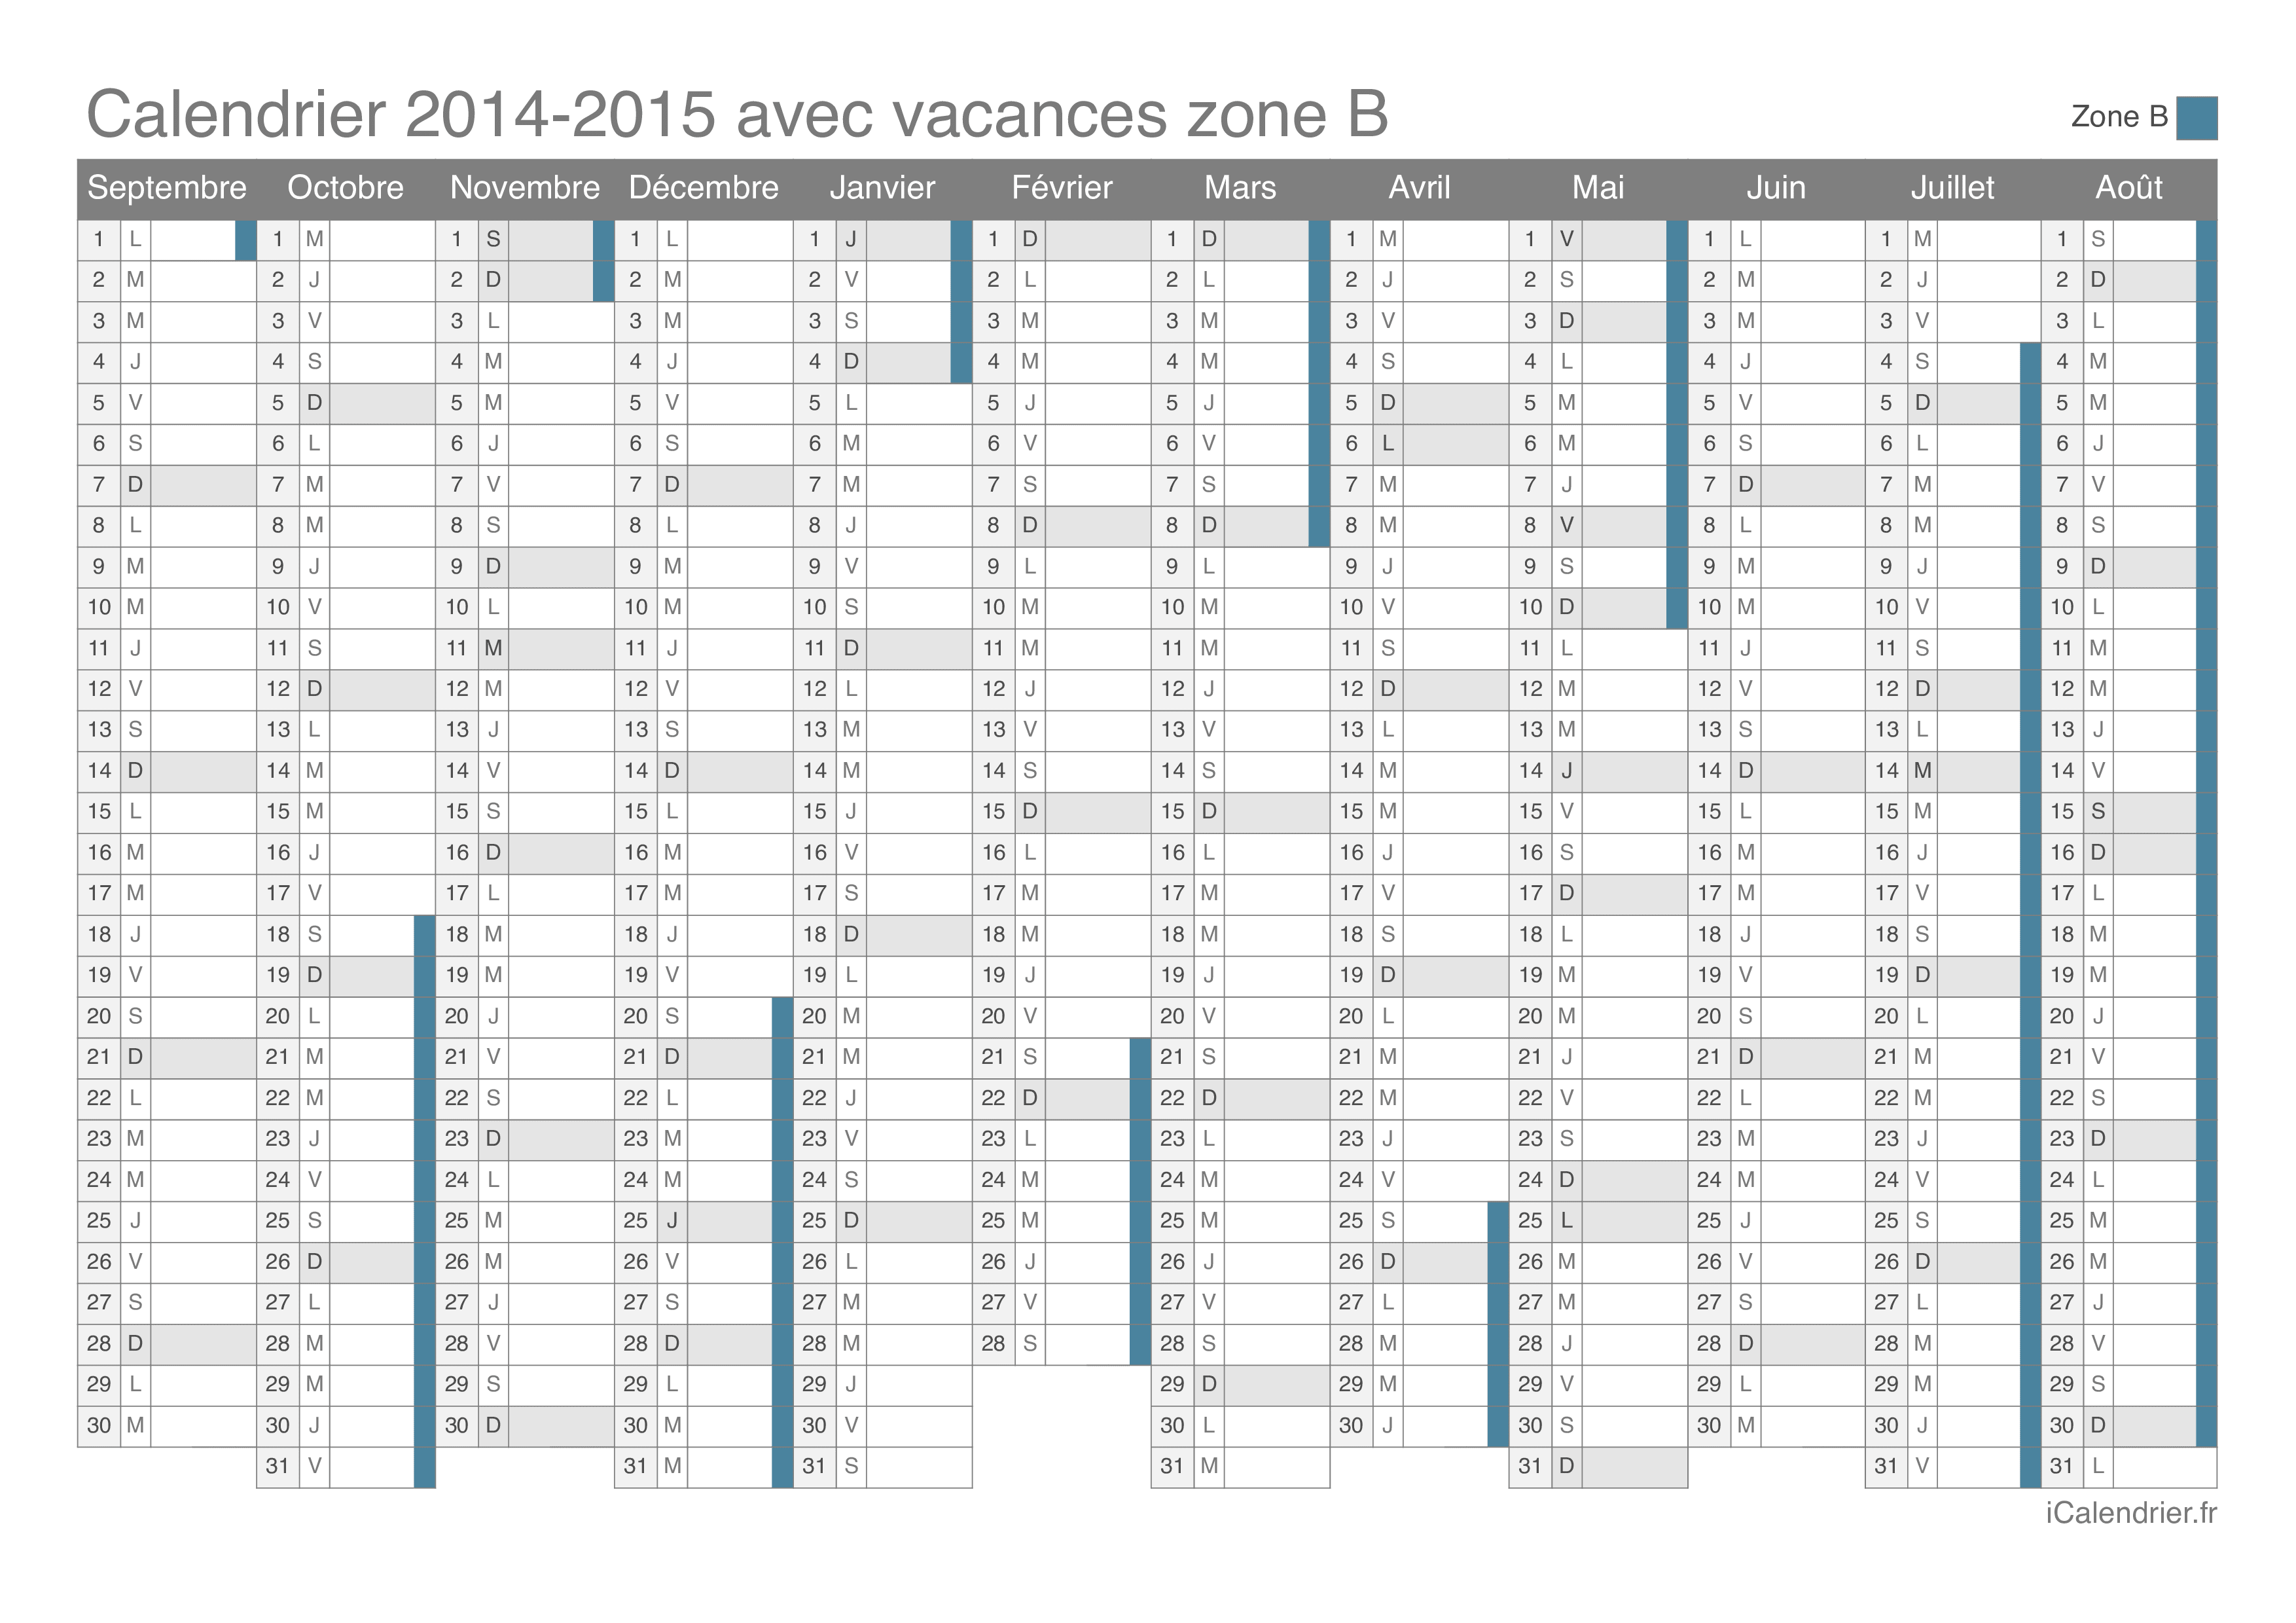 Calendrier des vacances scolaires 2014-2015 de la zone B